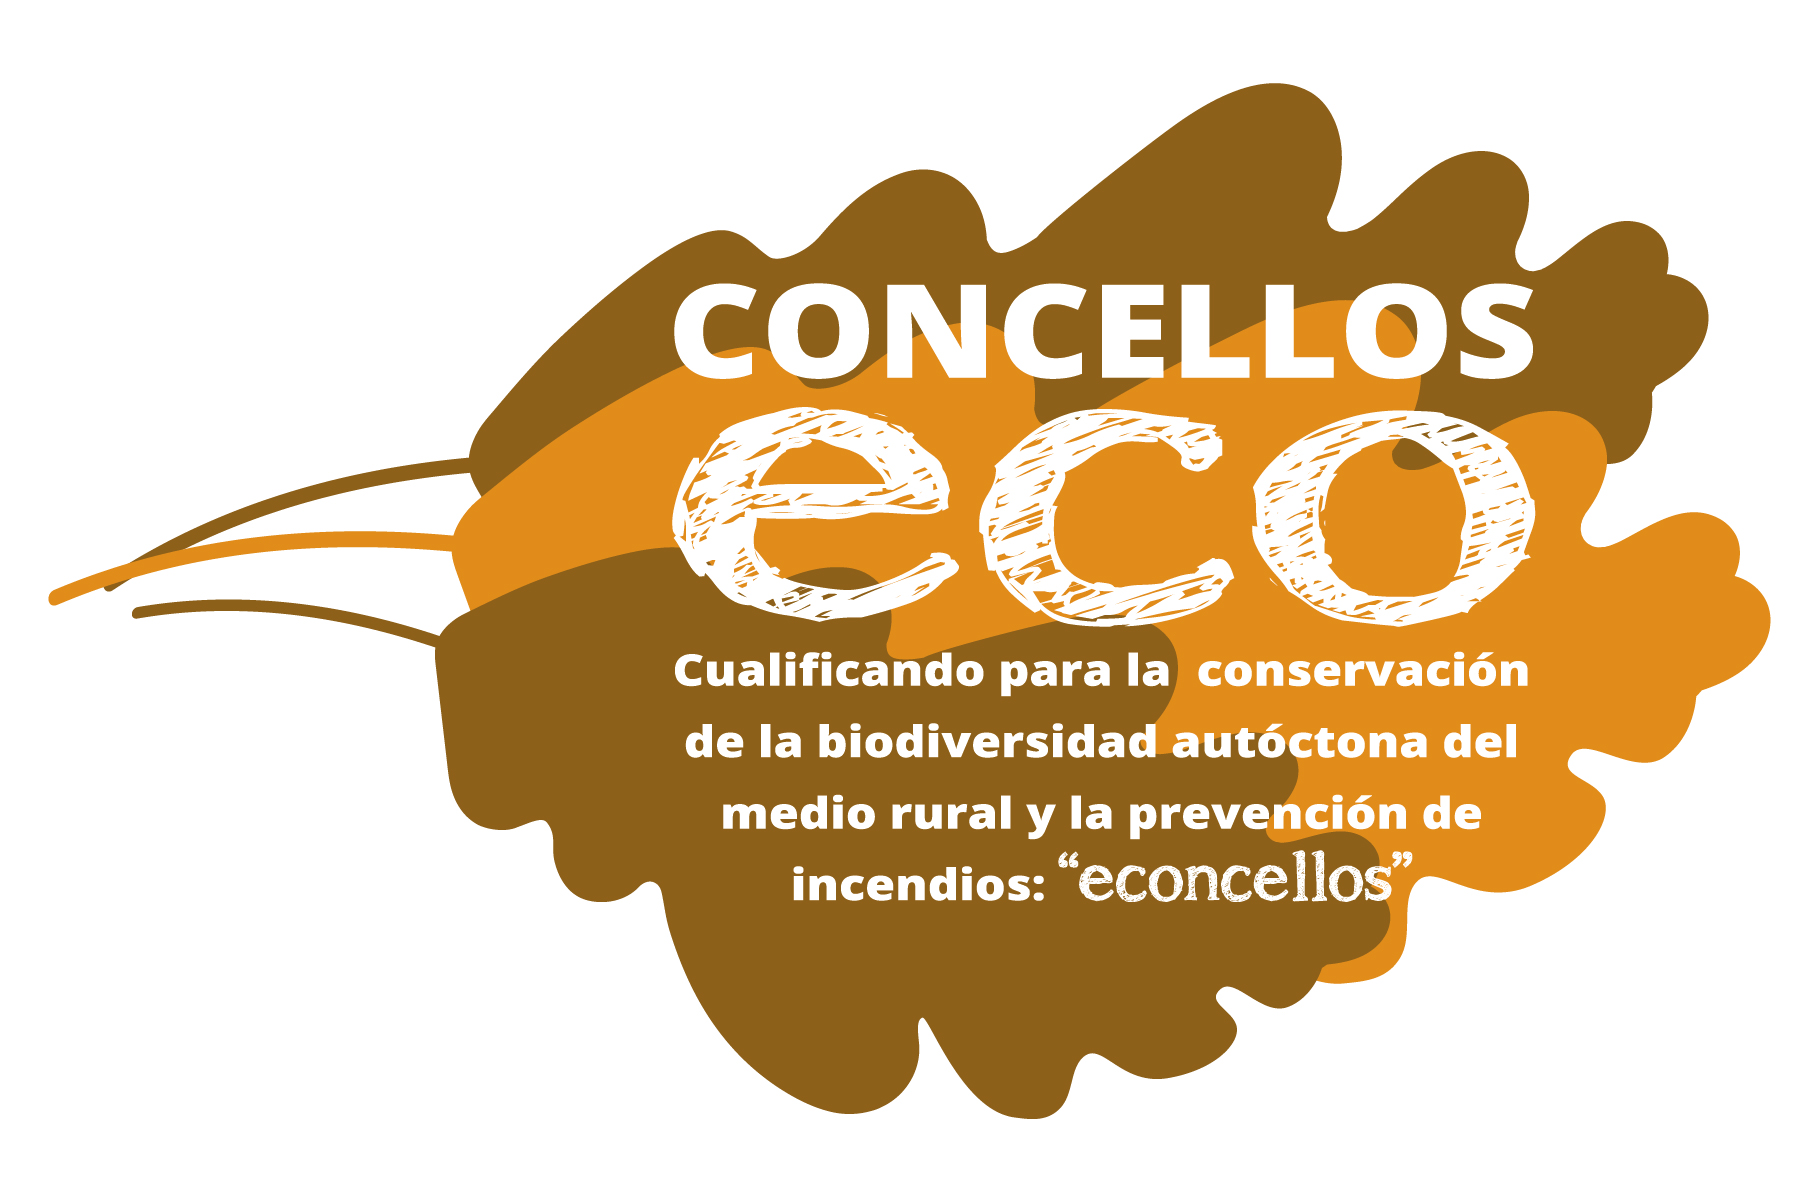 ConcellosECO: cualificando para la conservación de la biodiversidad autóctona del medio rural y la prevención de incendios